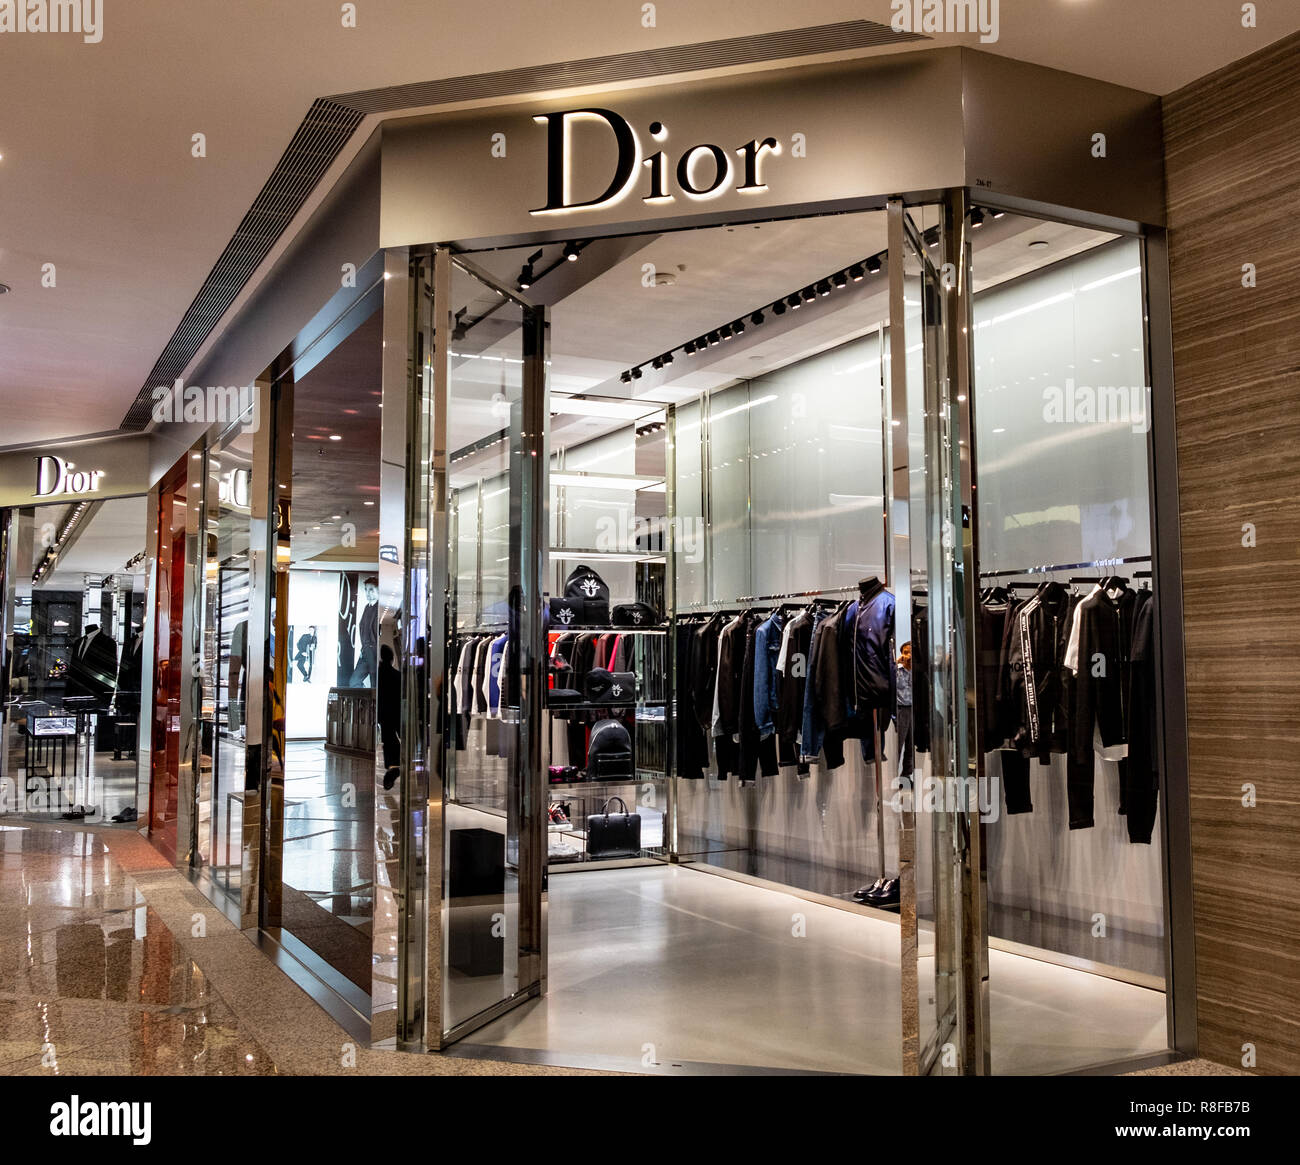 Dior store – Stock Editorial Photo © khellon #48990371